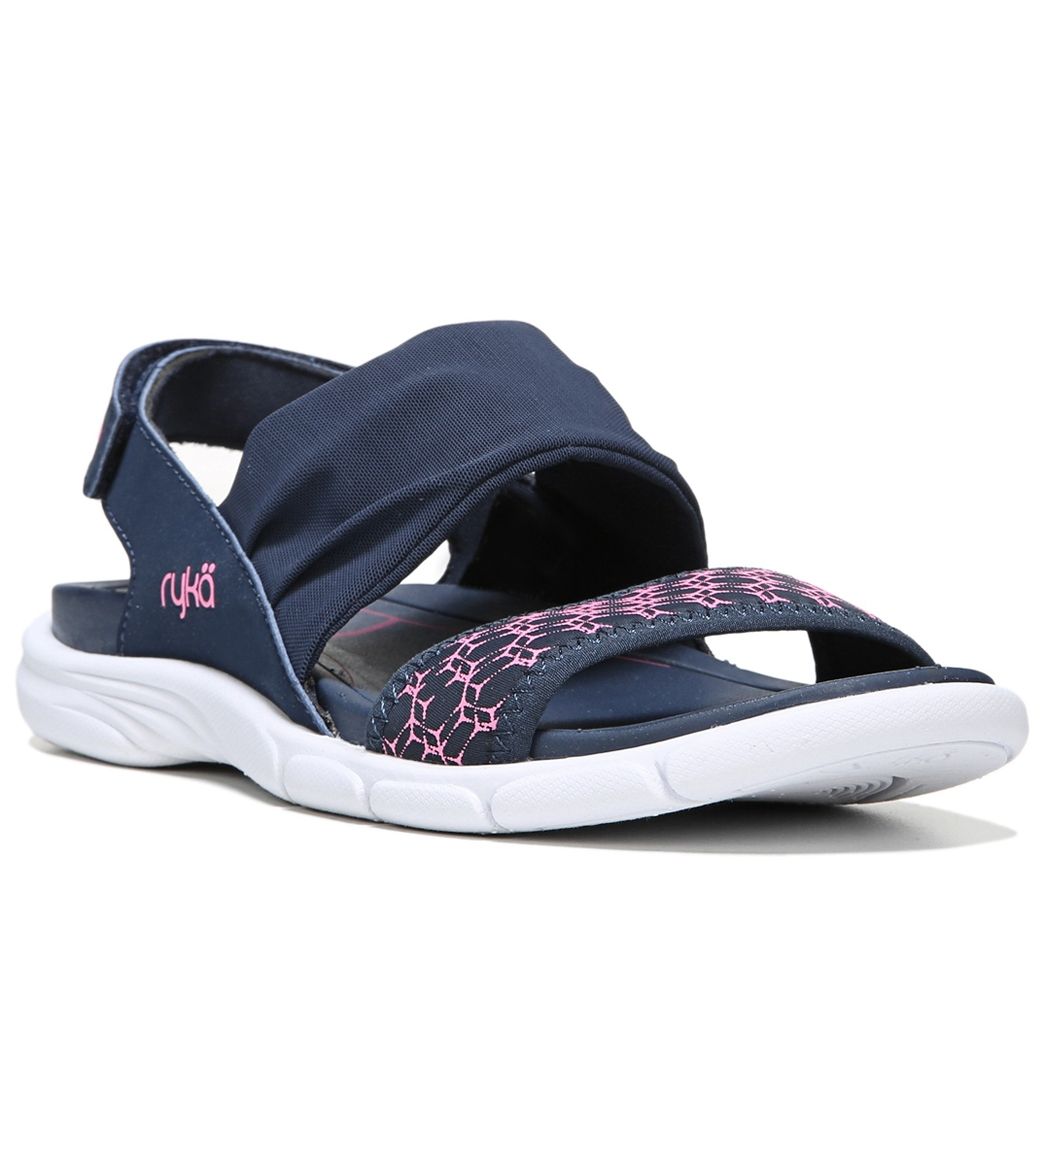 Ryka Women's Rodanthe Sandals - Insignia Blue/Neon Flamingo 5 Eva/Foam - Swimoutlet.com